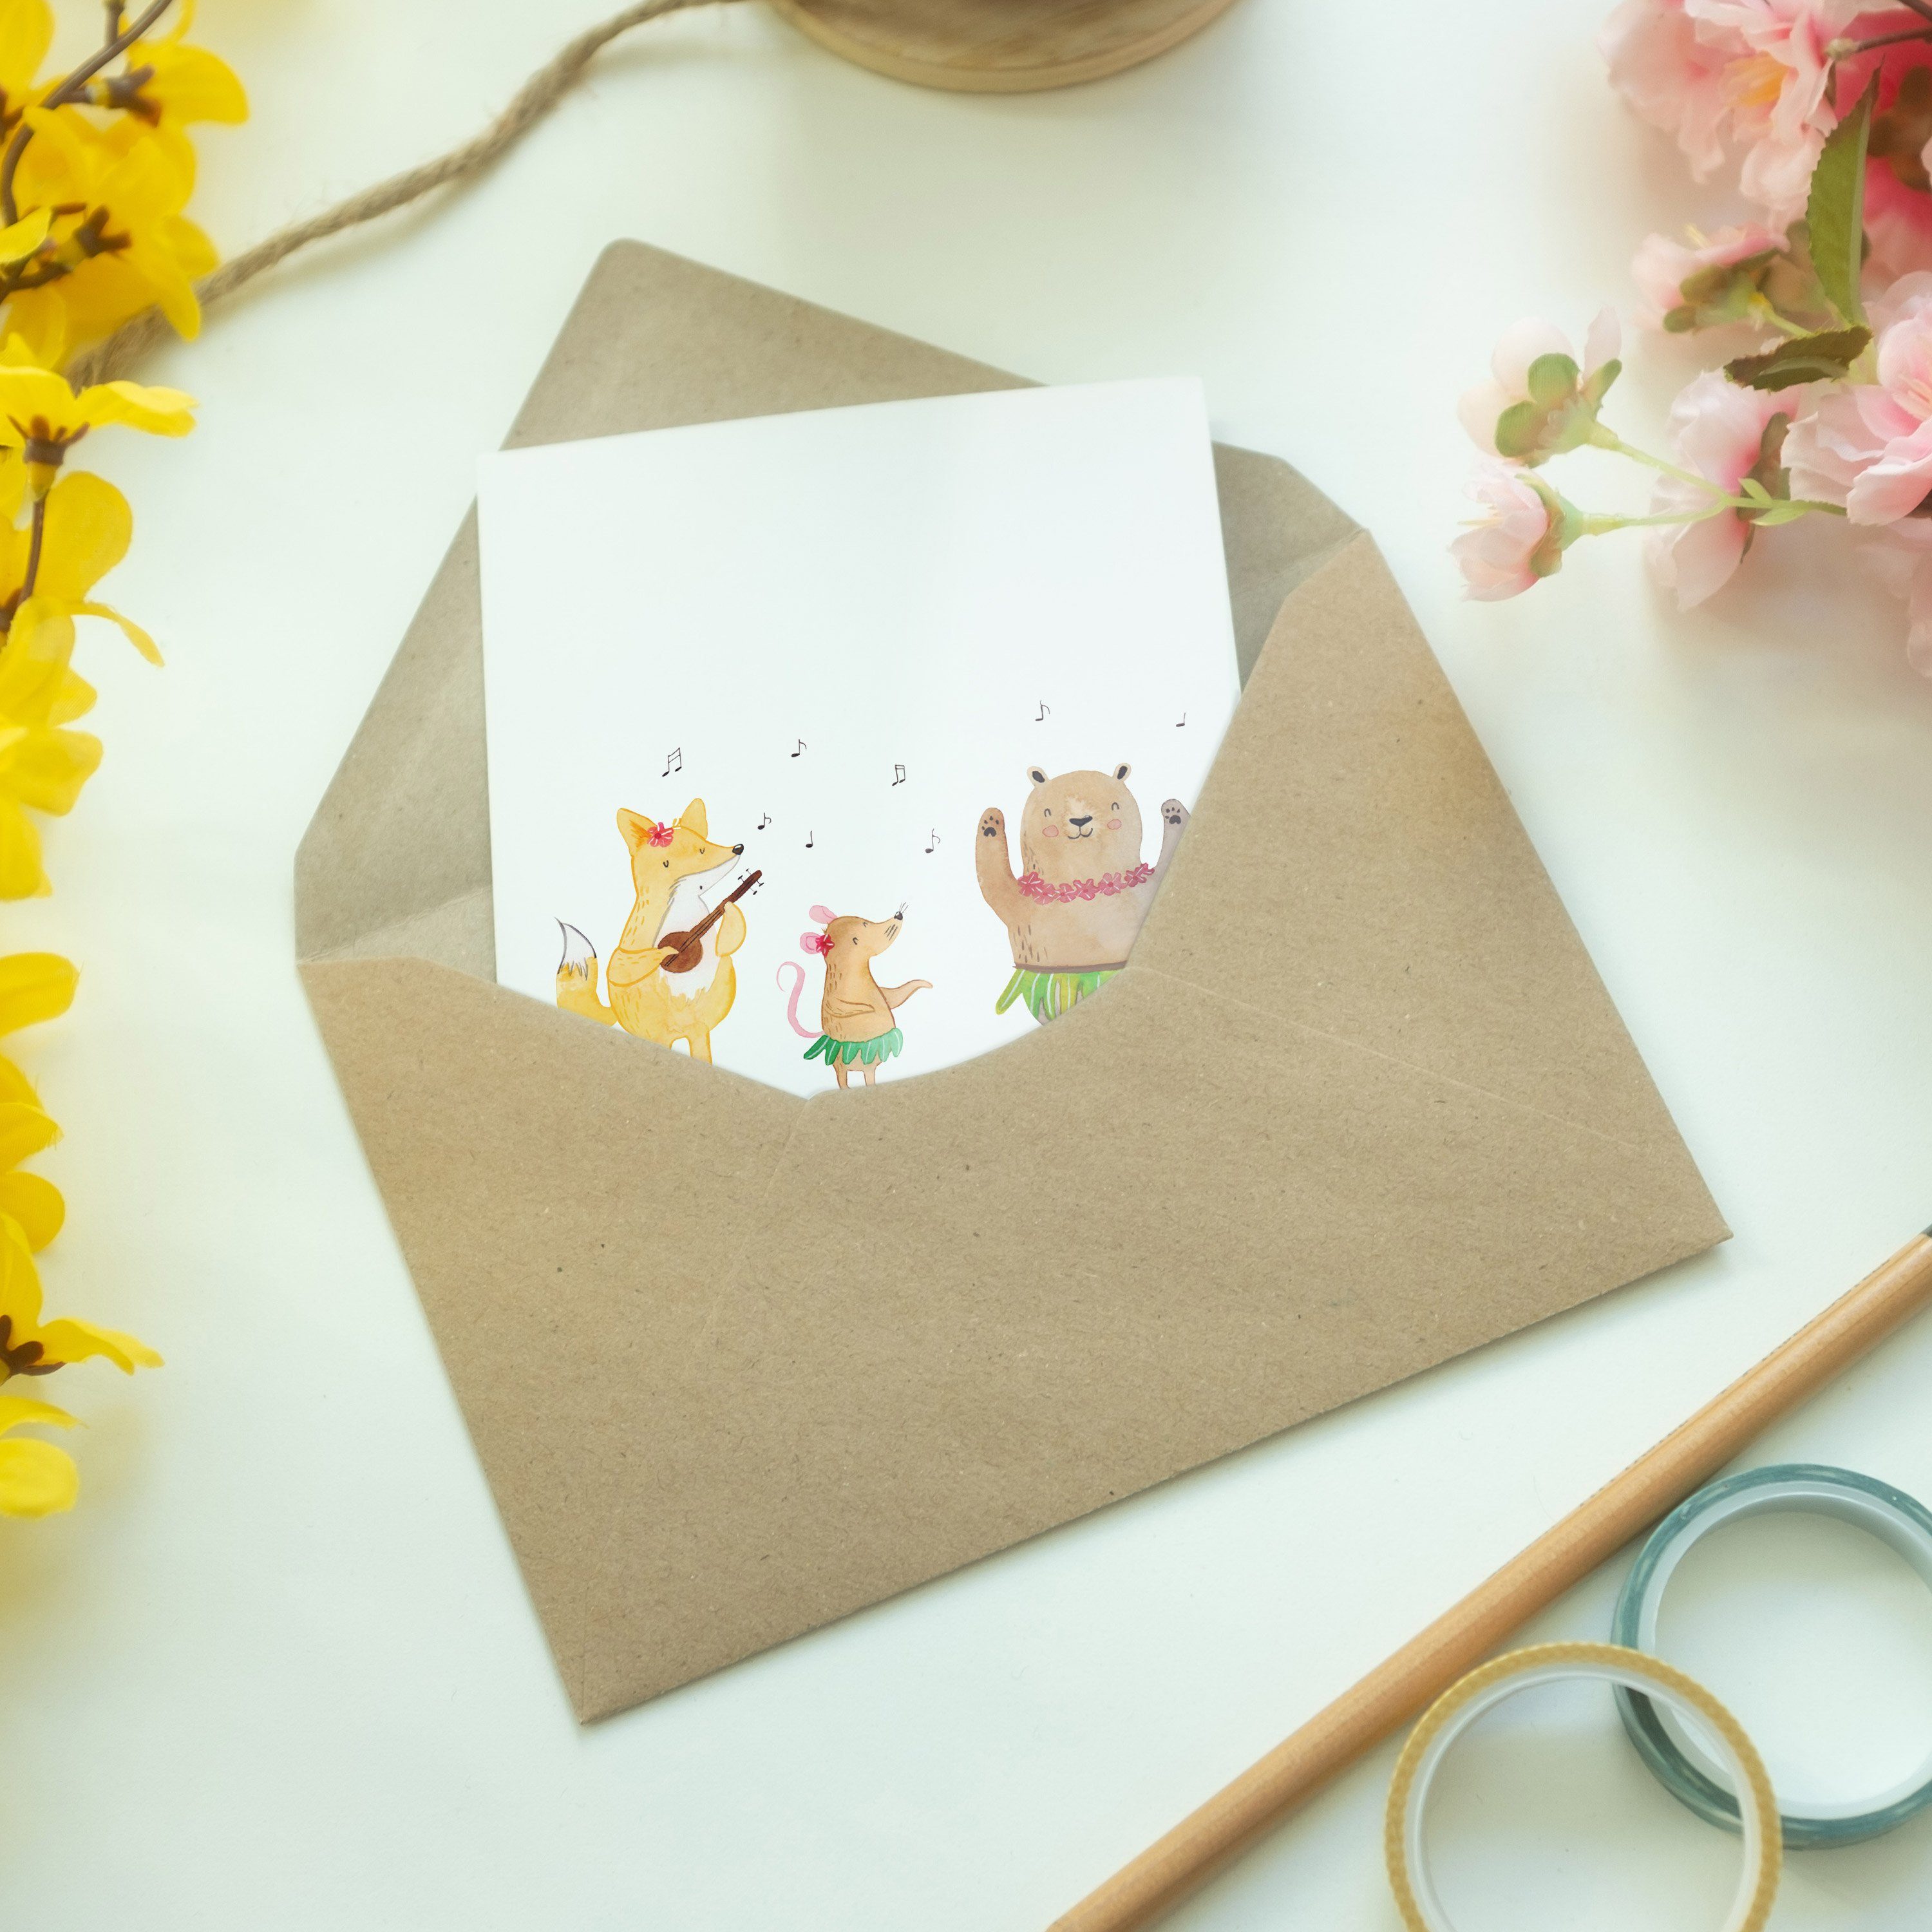 Mr. & Mrs. Panda Grußkarte Geschenk, Weiß Lachen, Waldtiere Hochzeitskarte Aloha Tiermotive, - 